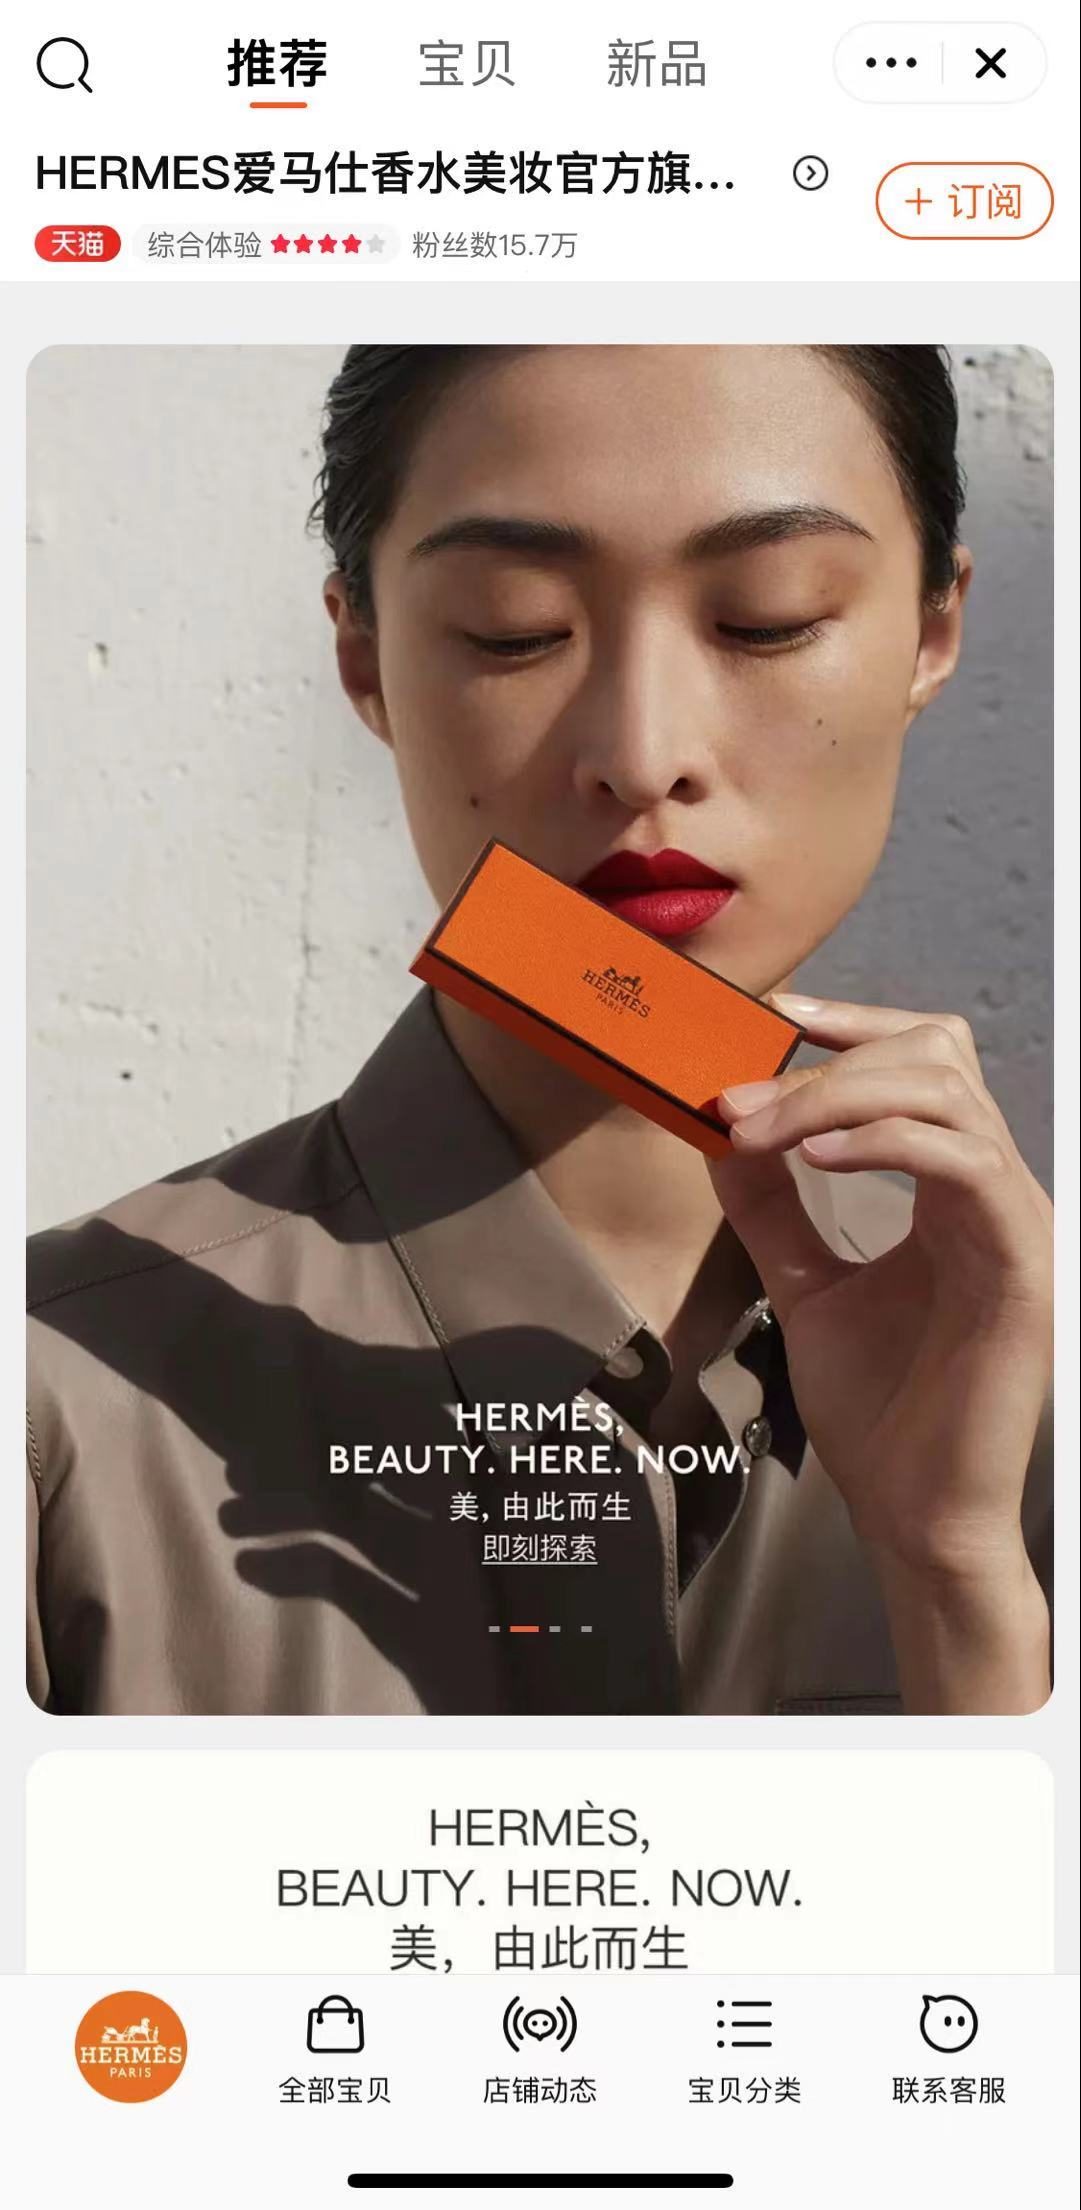 爱马仕首个美妆系列正式进入中国市场